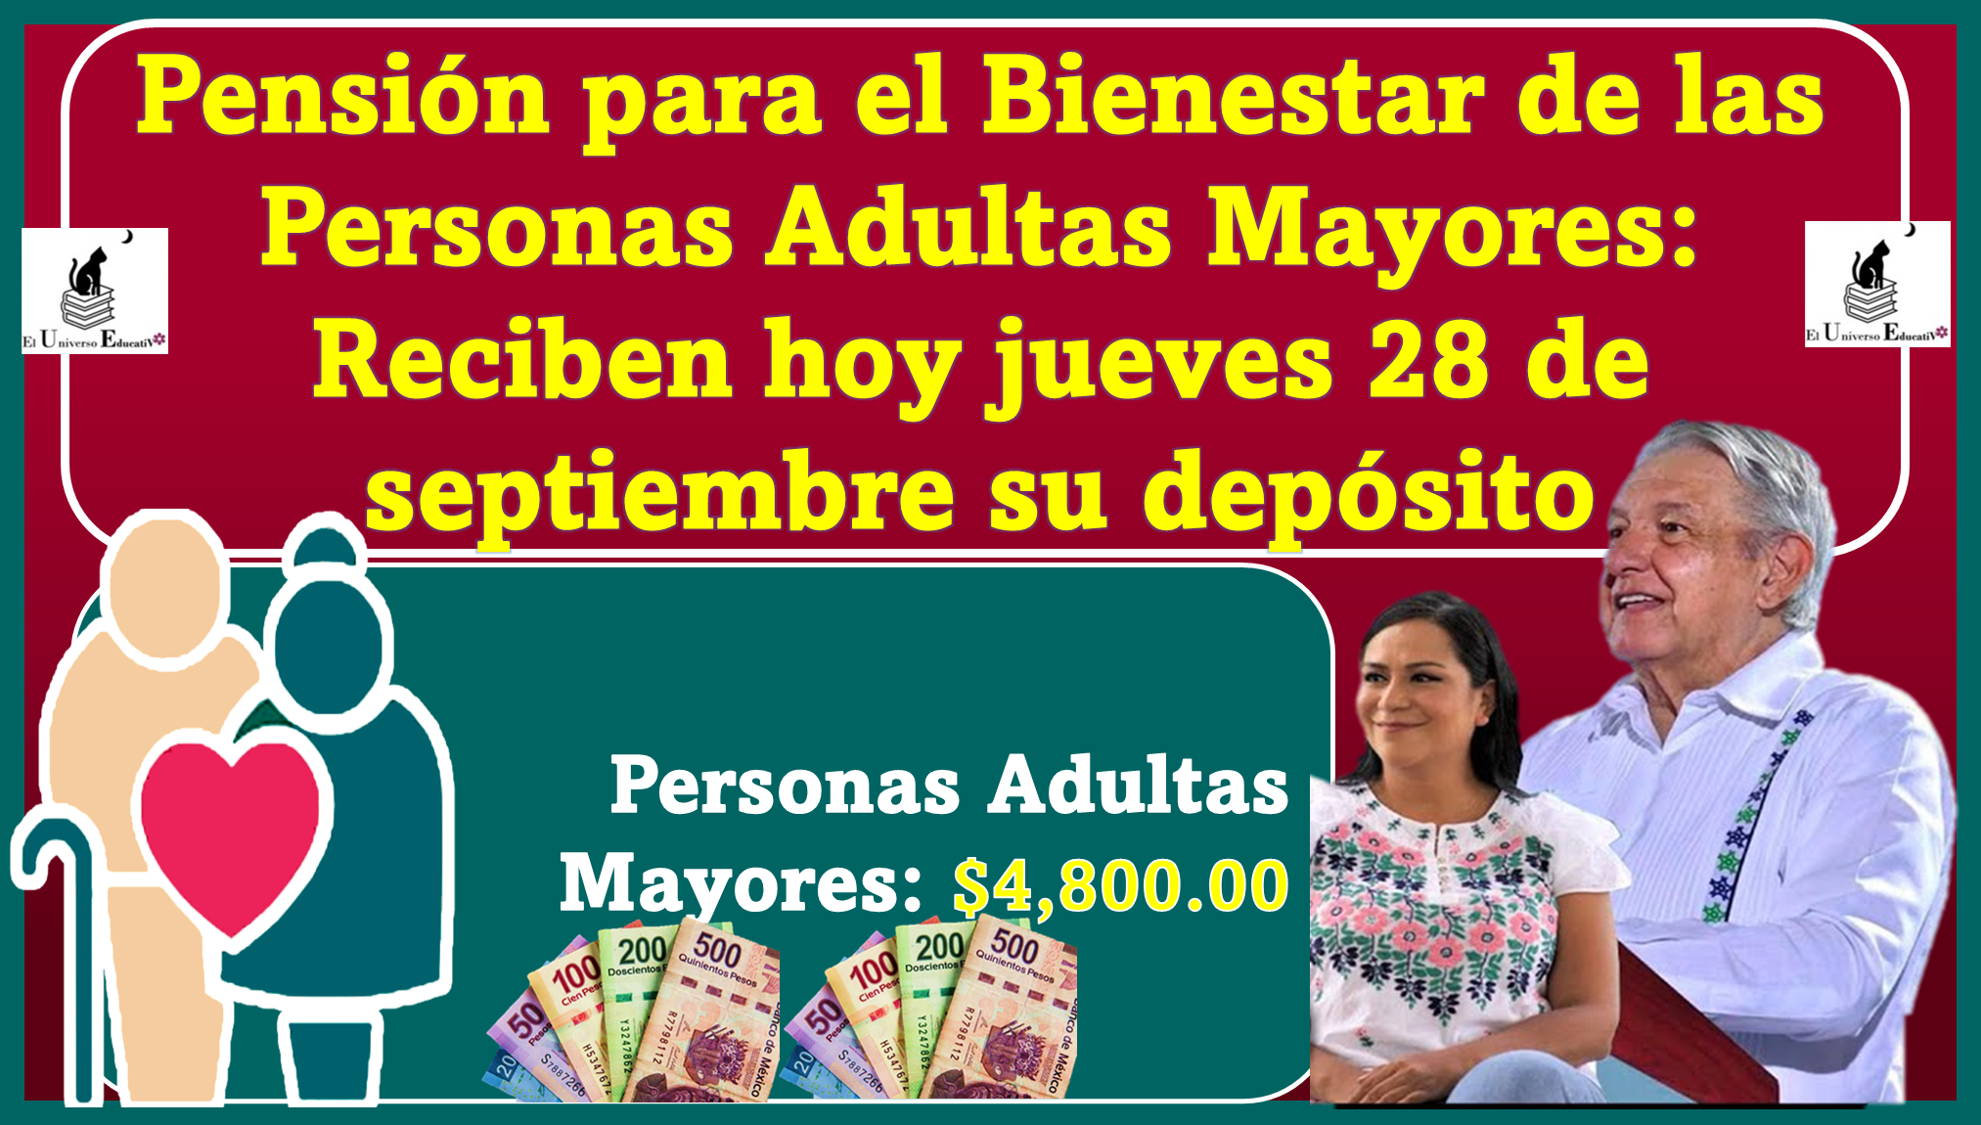 Pensión para el Bienestar de las Personas Adultas Mayores: Reciben hoy jueves 28 de septiembre su depósito bancario